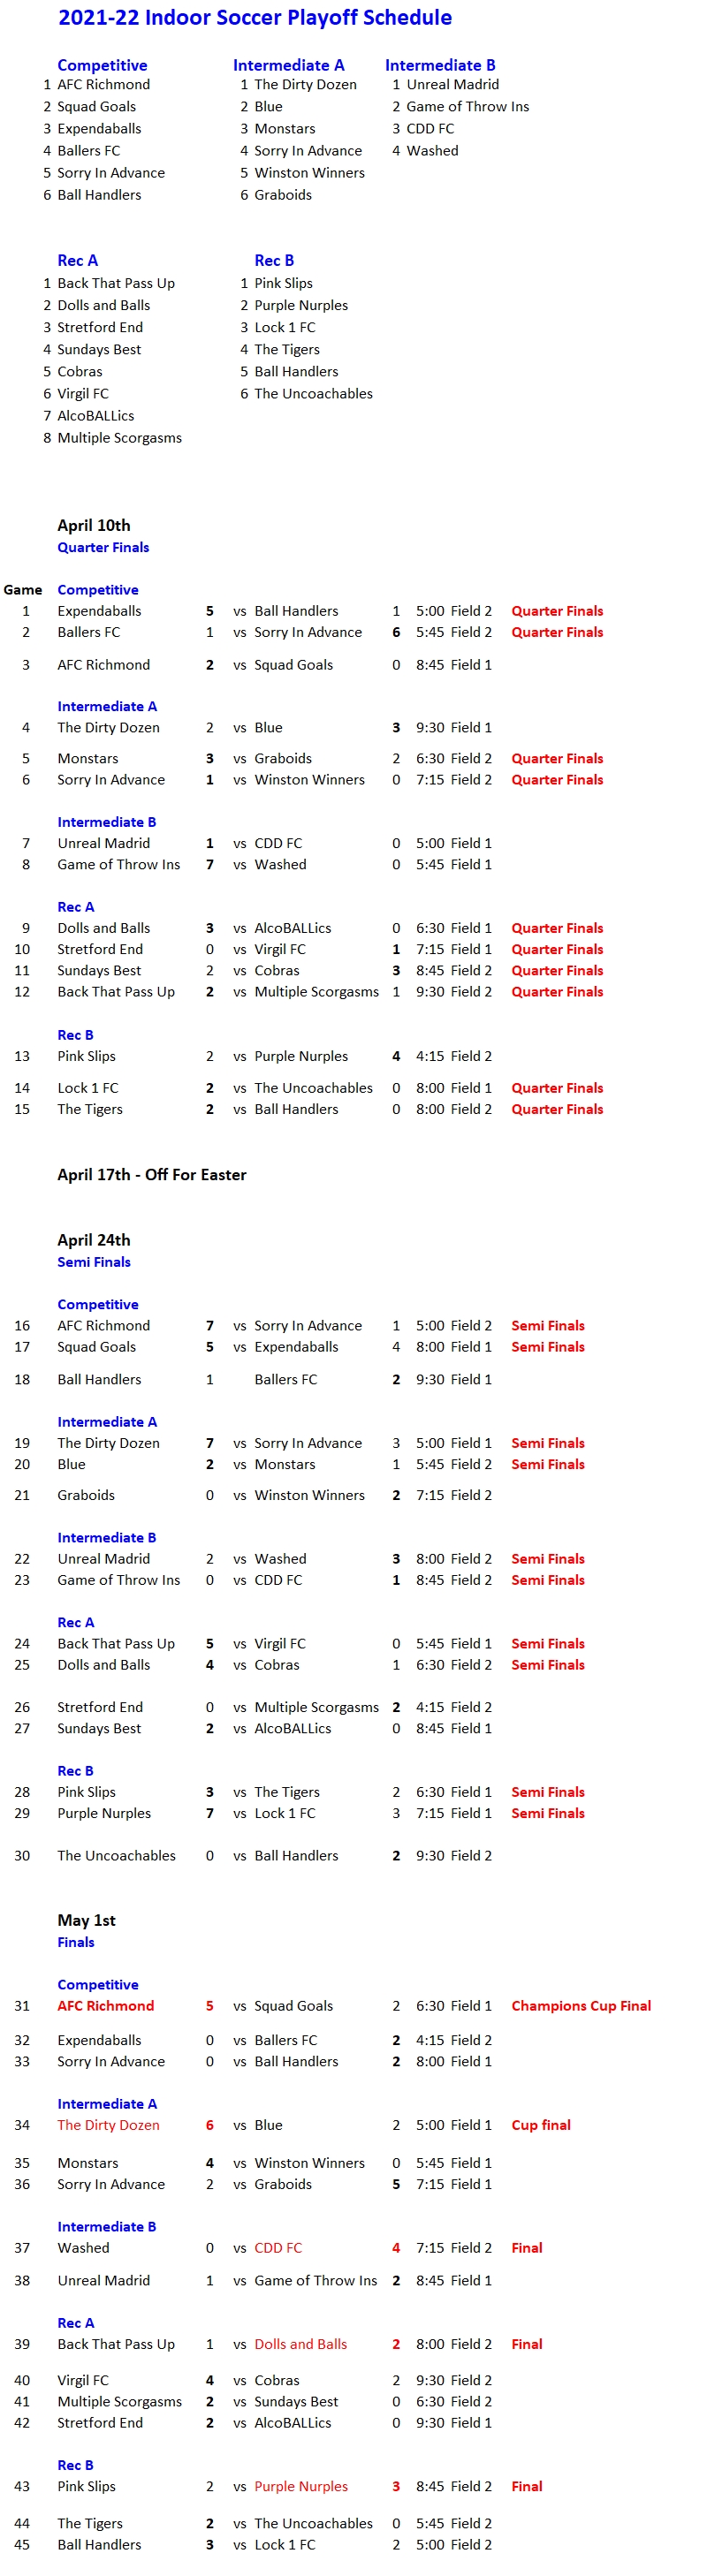 2021-22 NRS Indoor Soccer Schedule FINAL